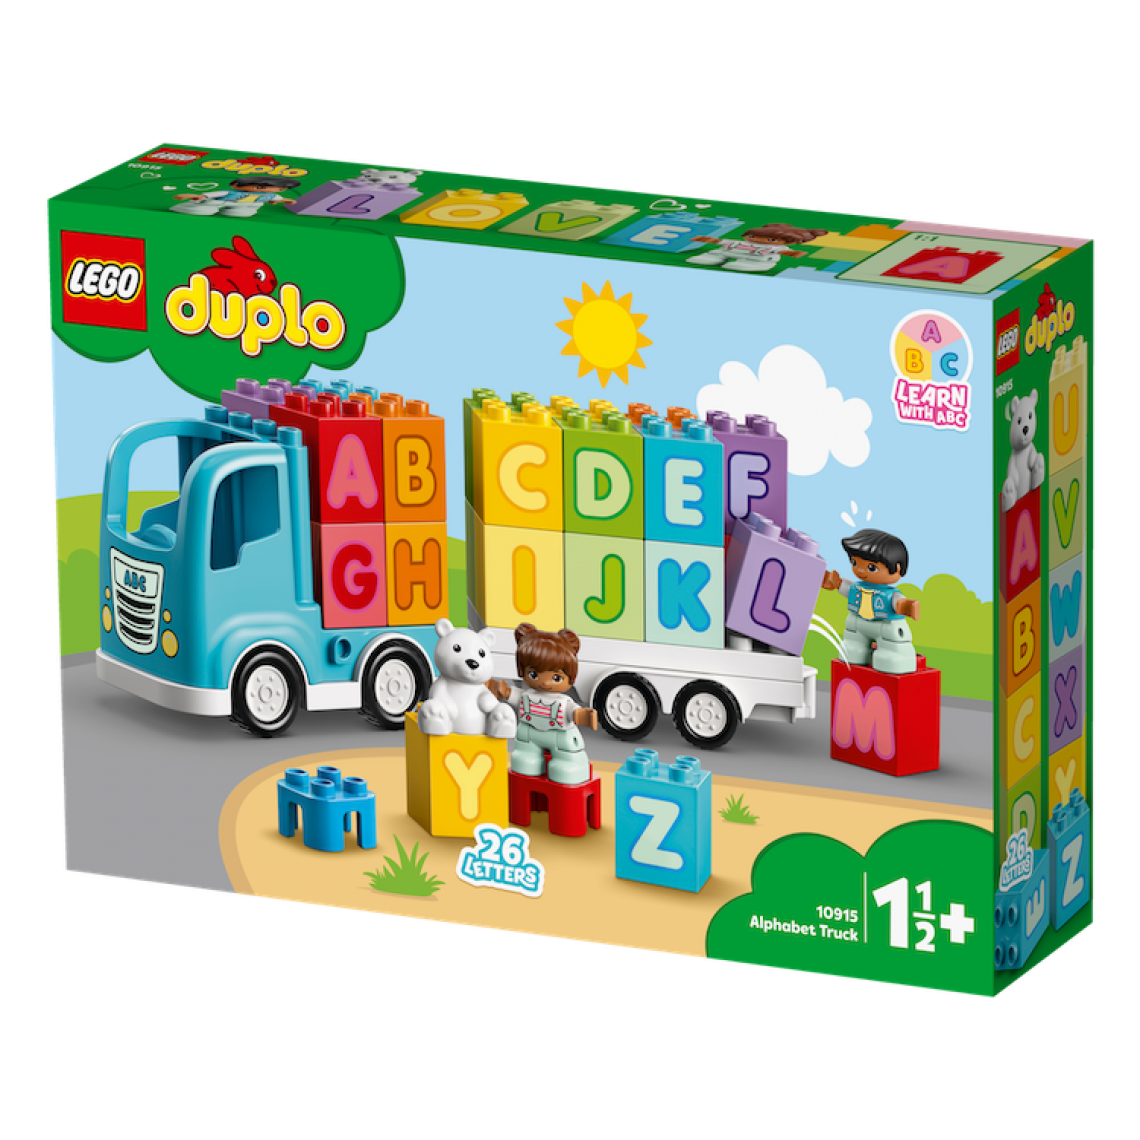 Lego - 10915 Le camion des lettres LEGO® DUPLO® Mes 1ers pas - Briques Lego